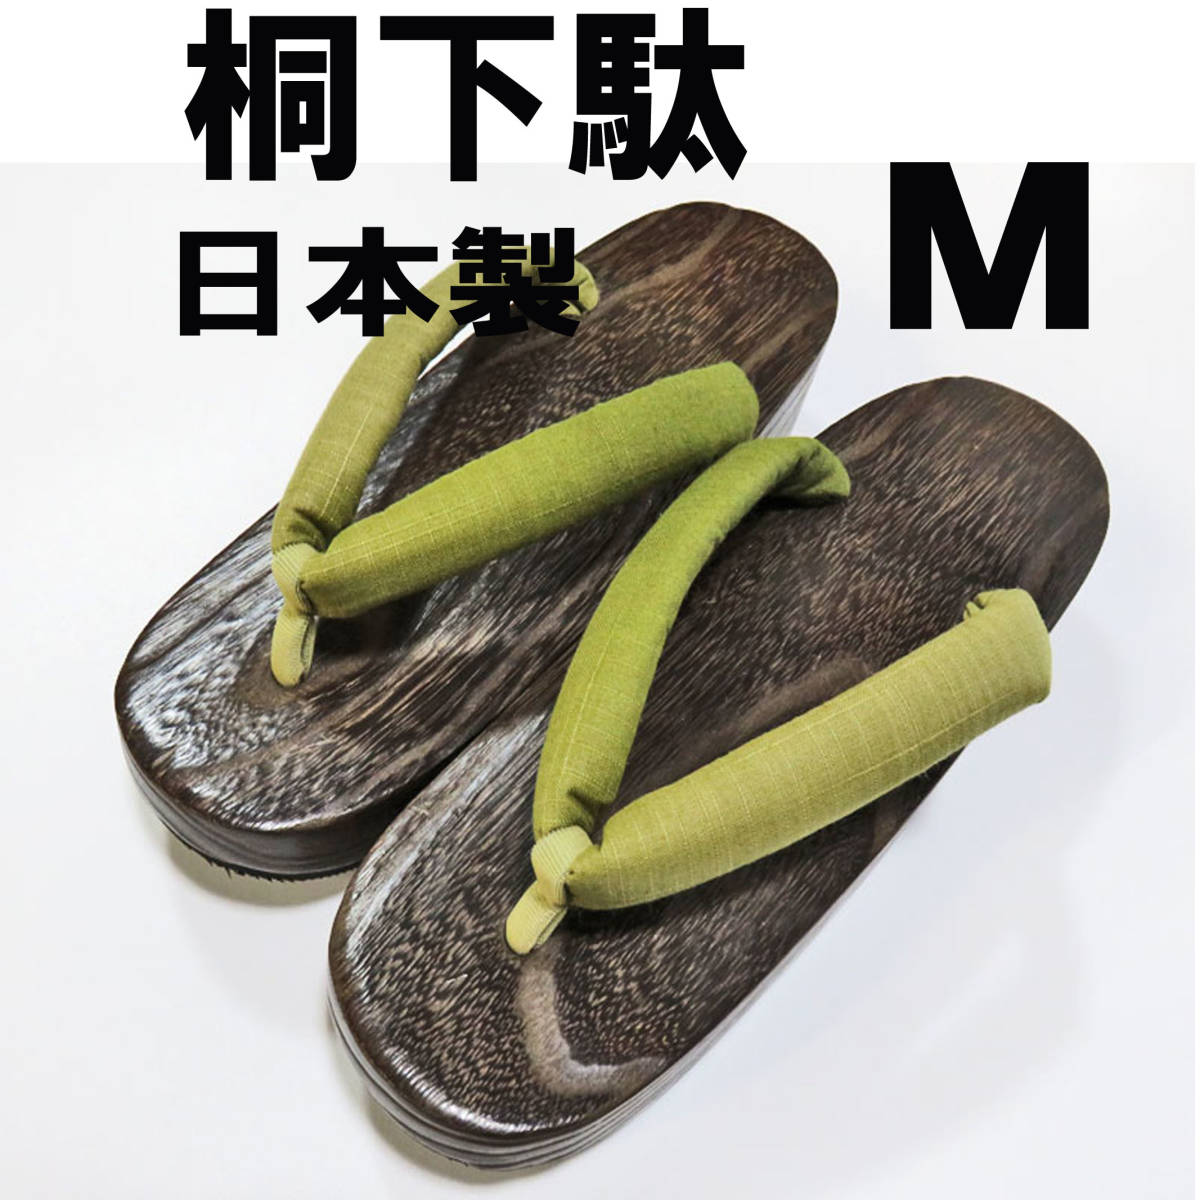 . geta M/ сделано в Японии / женский / новый товар не использовался // бесплатная доставка /